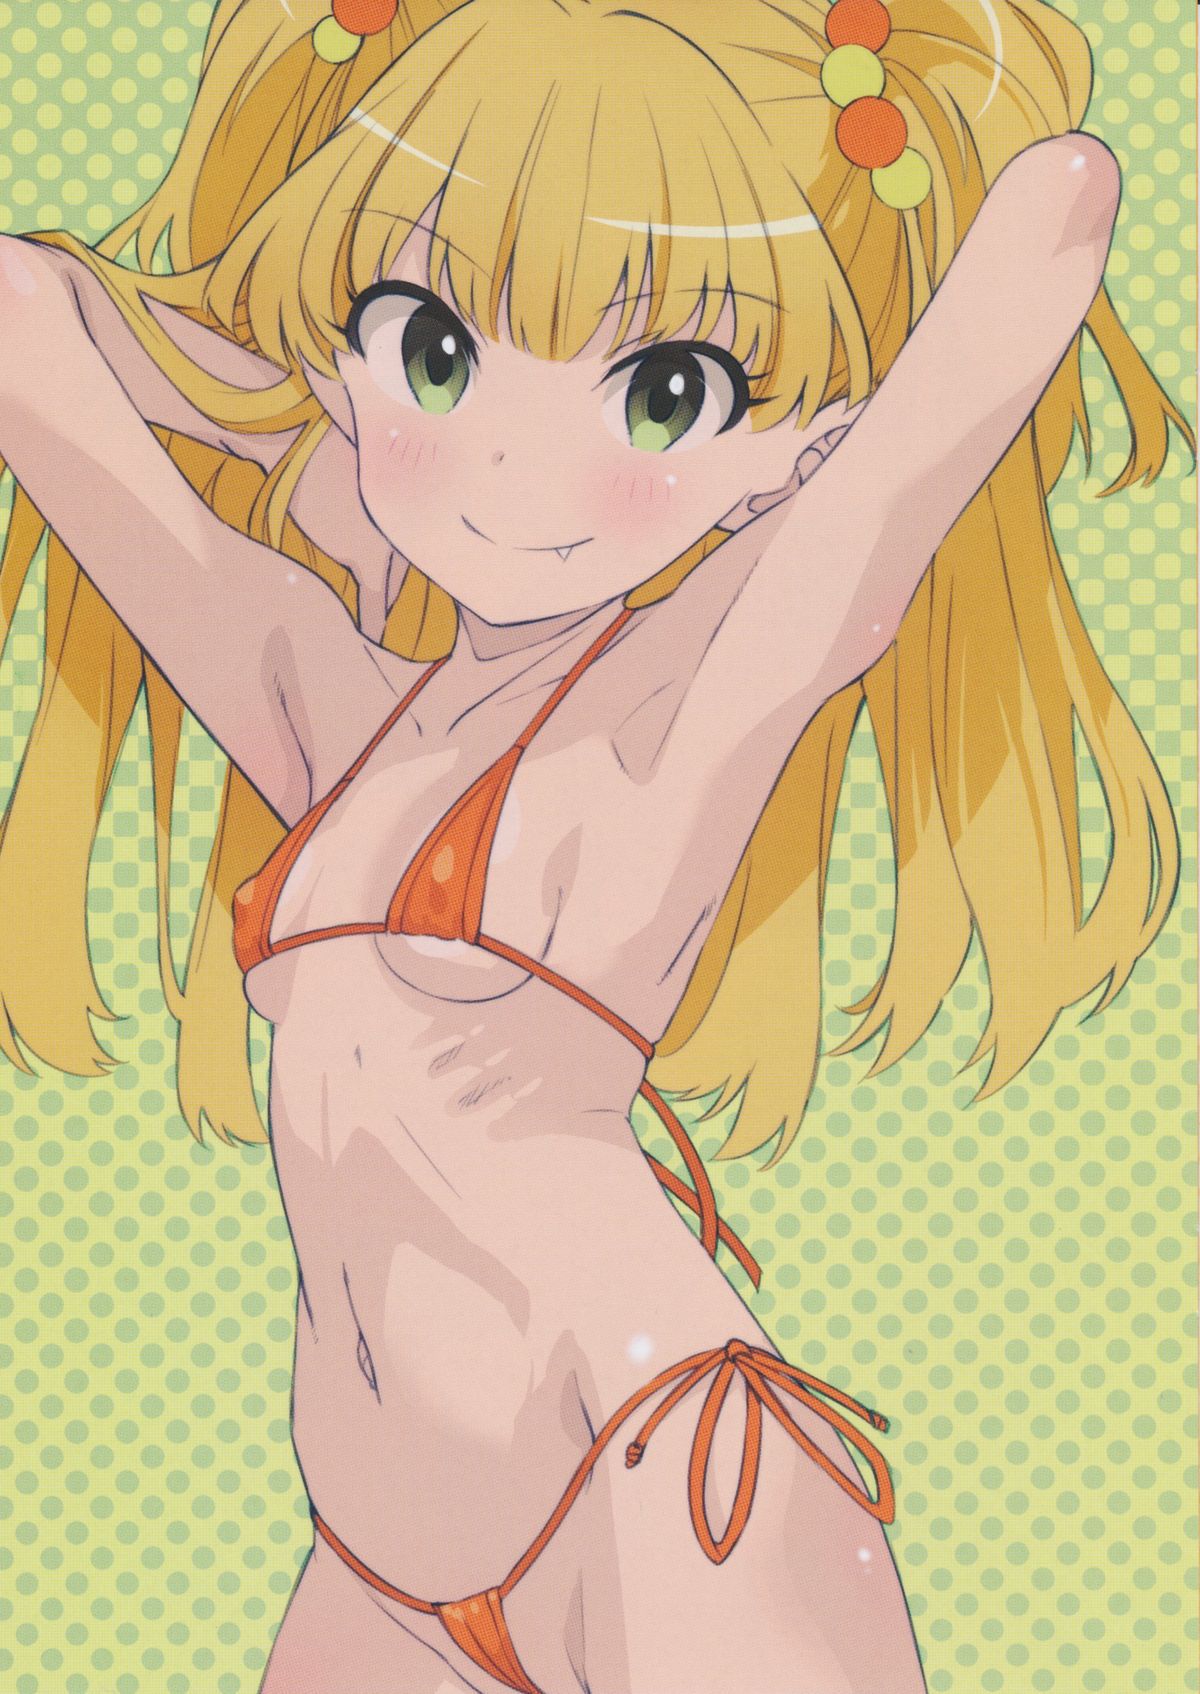 Porori Chikuni! Secondary erotic picture of a girl in a micro bikini wwww part3 28